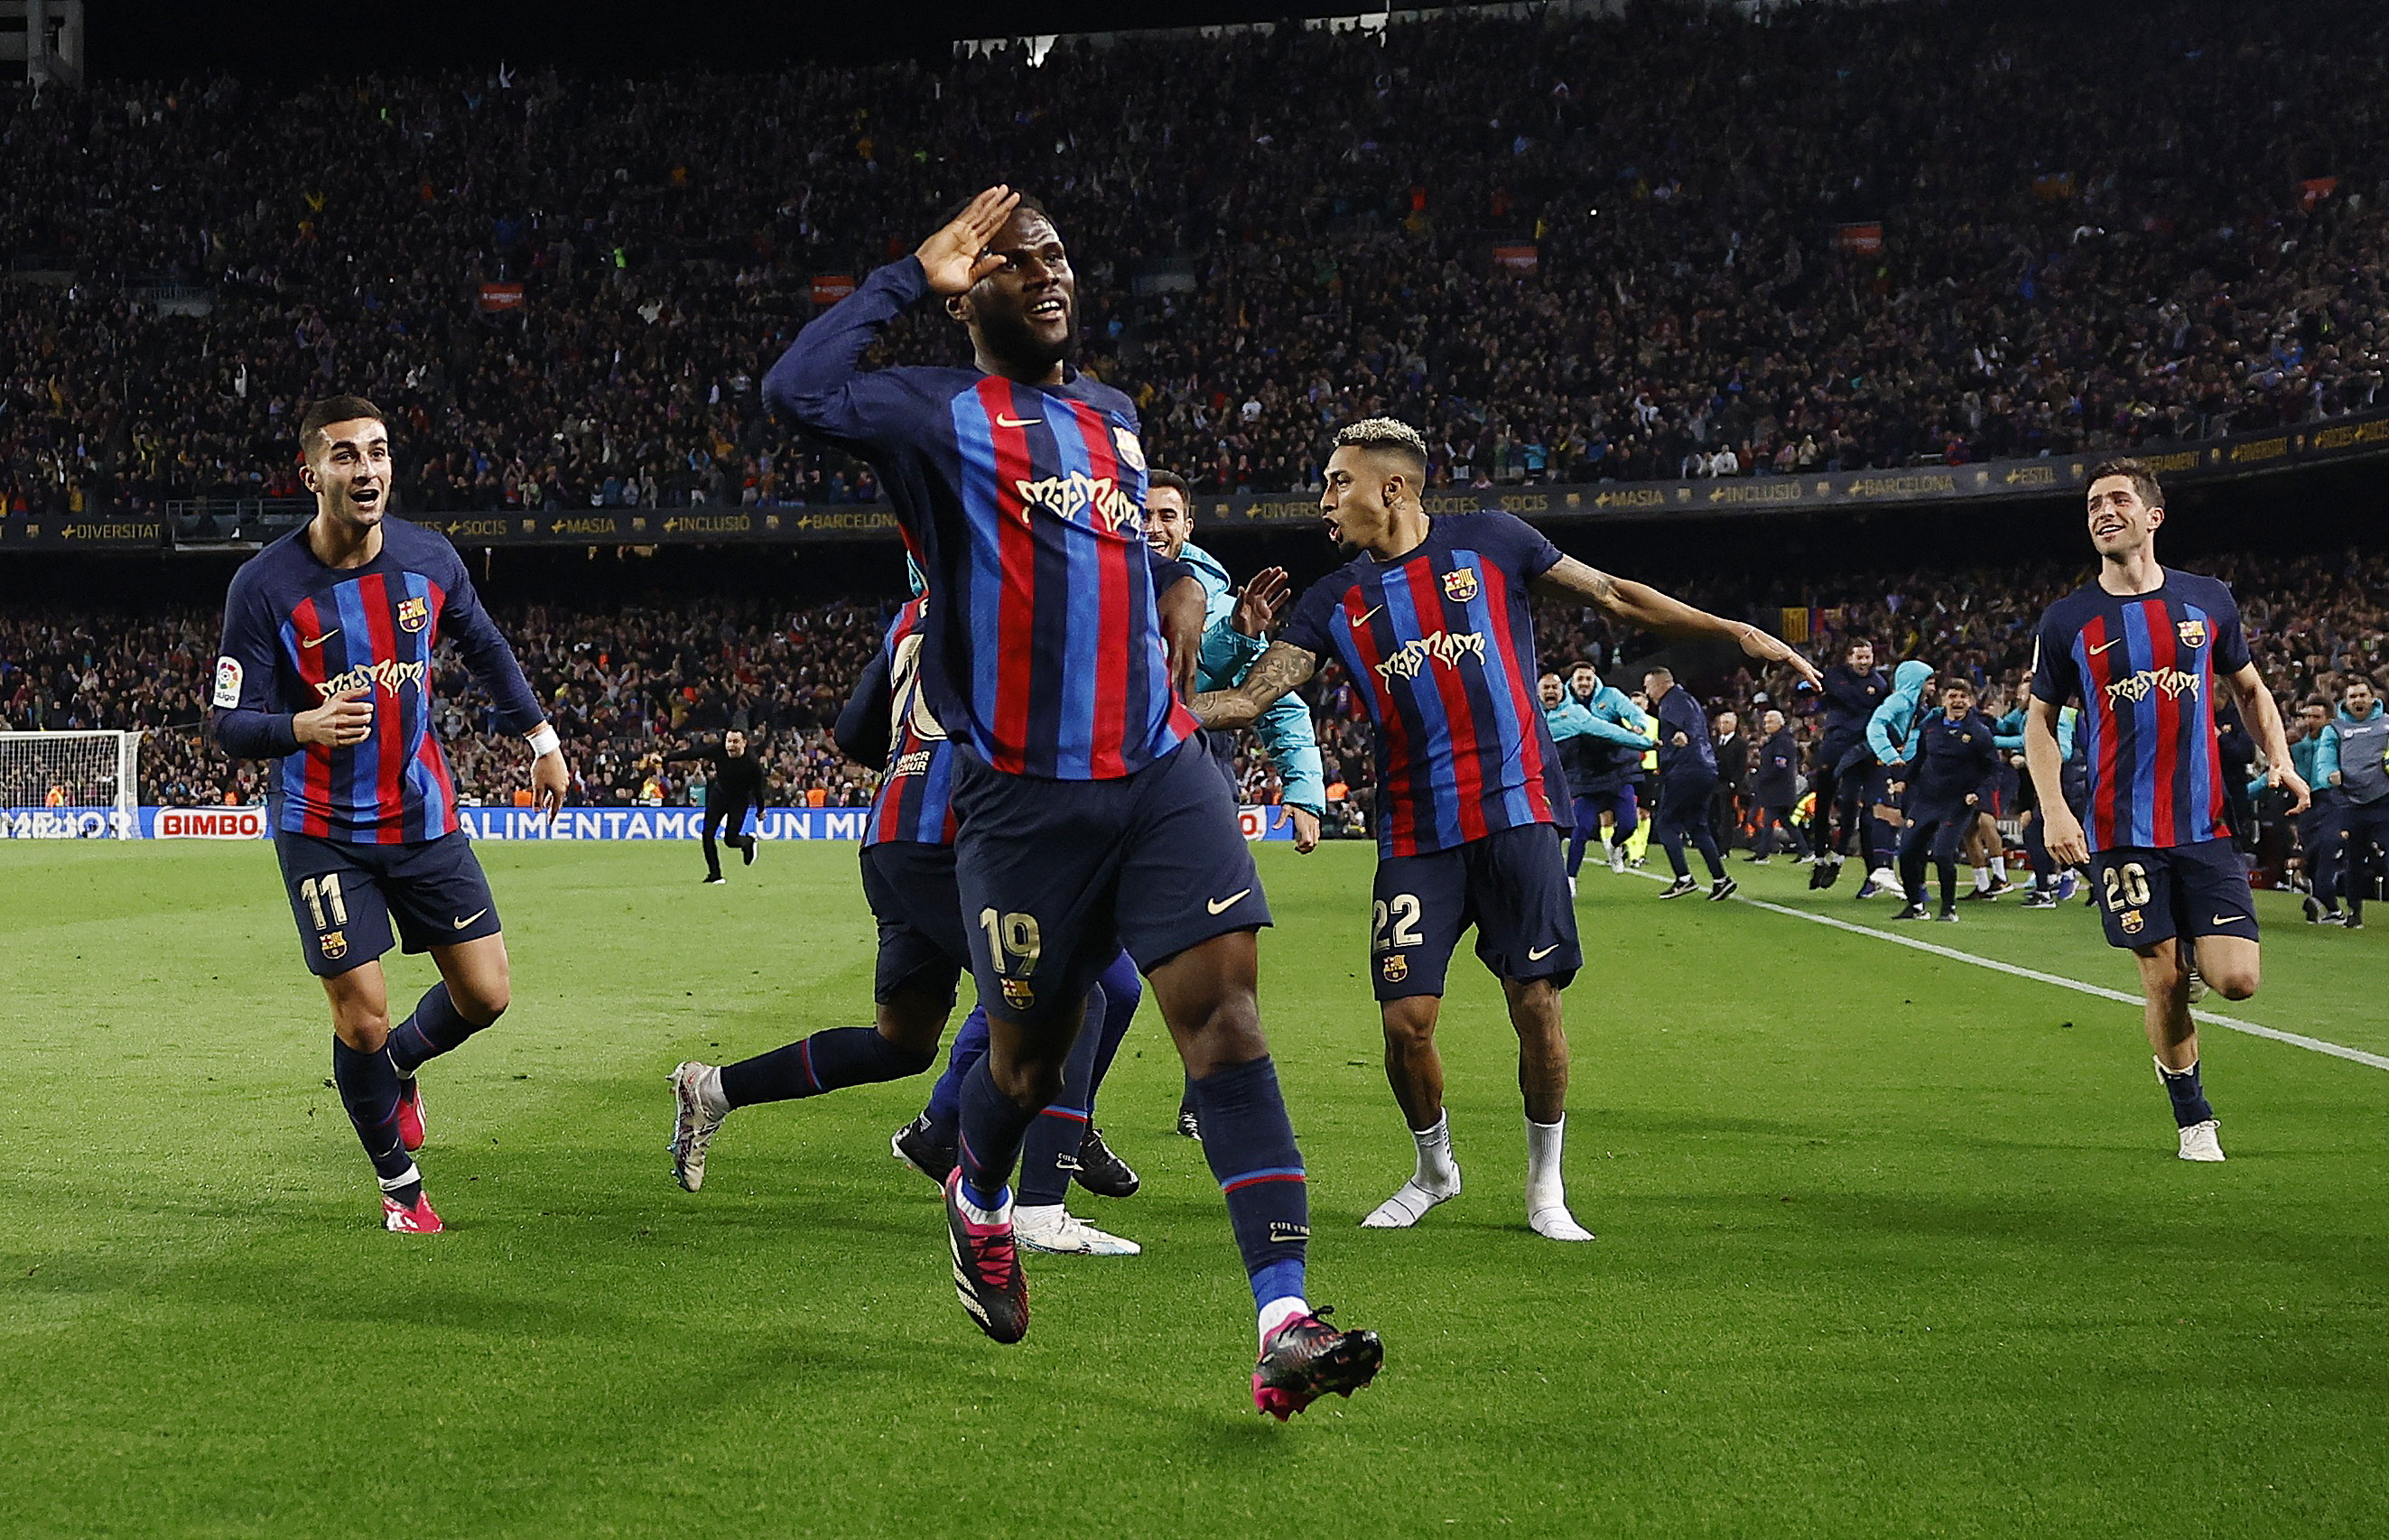 El Barcelona derrotó 2-1 al Real Madrid en el Camp Nou y dio un gran paso para conquistar La Liga